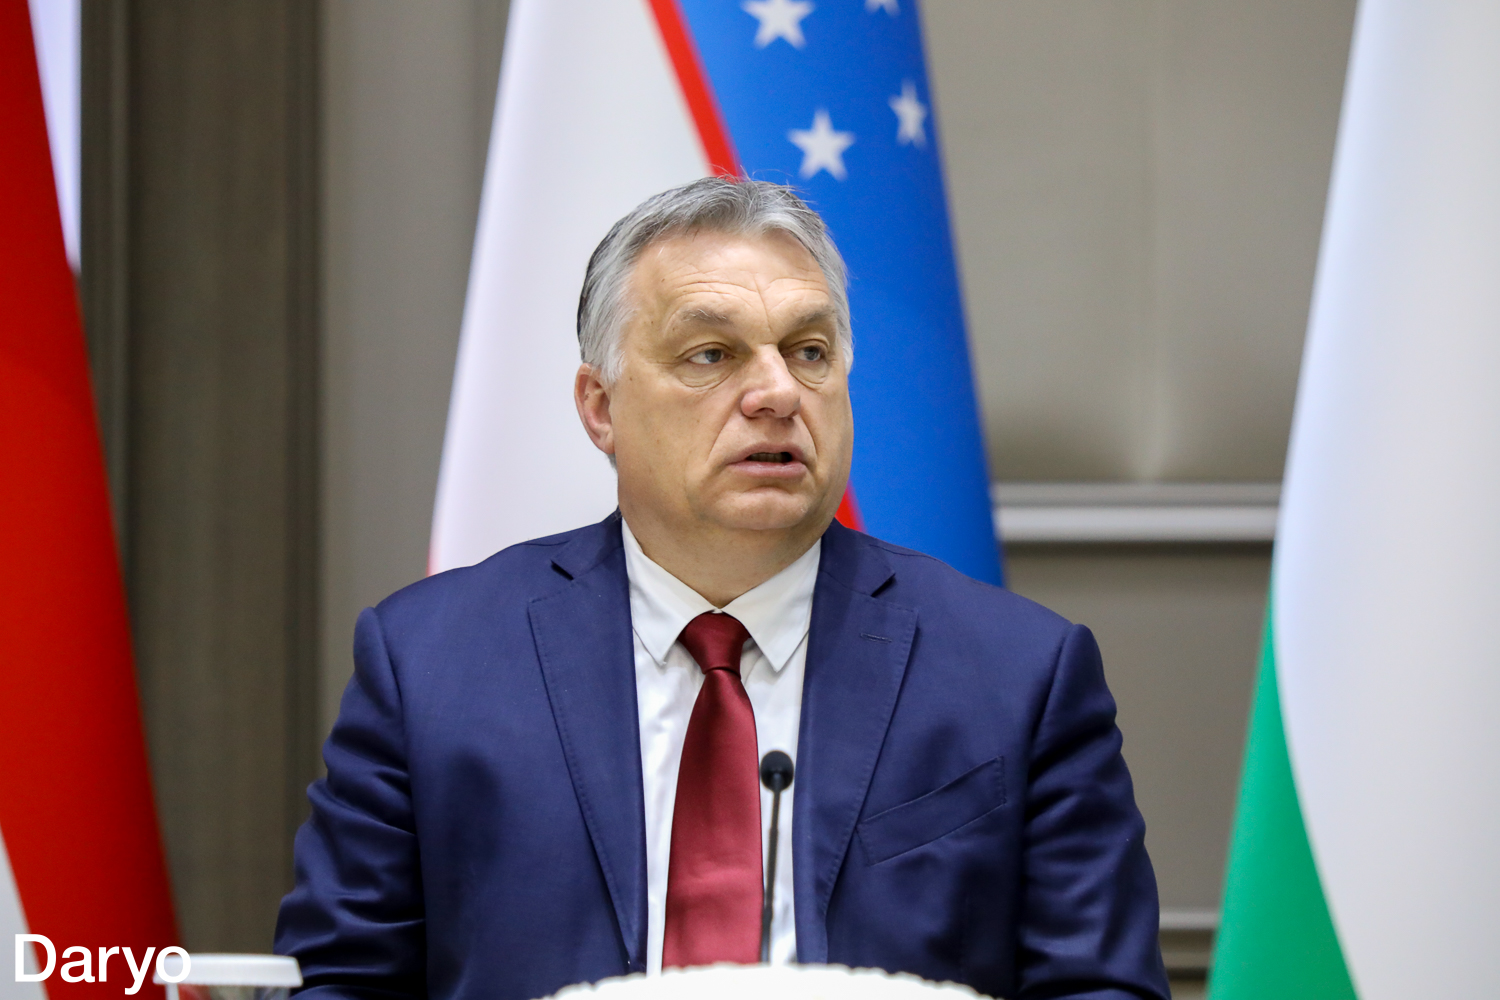 Vengriya bosh vaziri Viktor Orban.